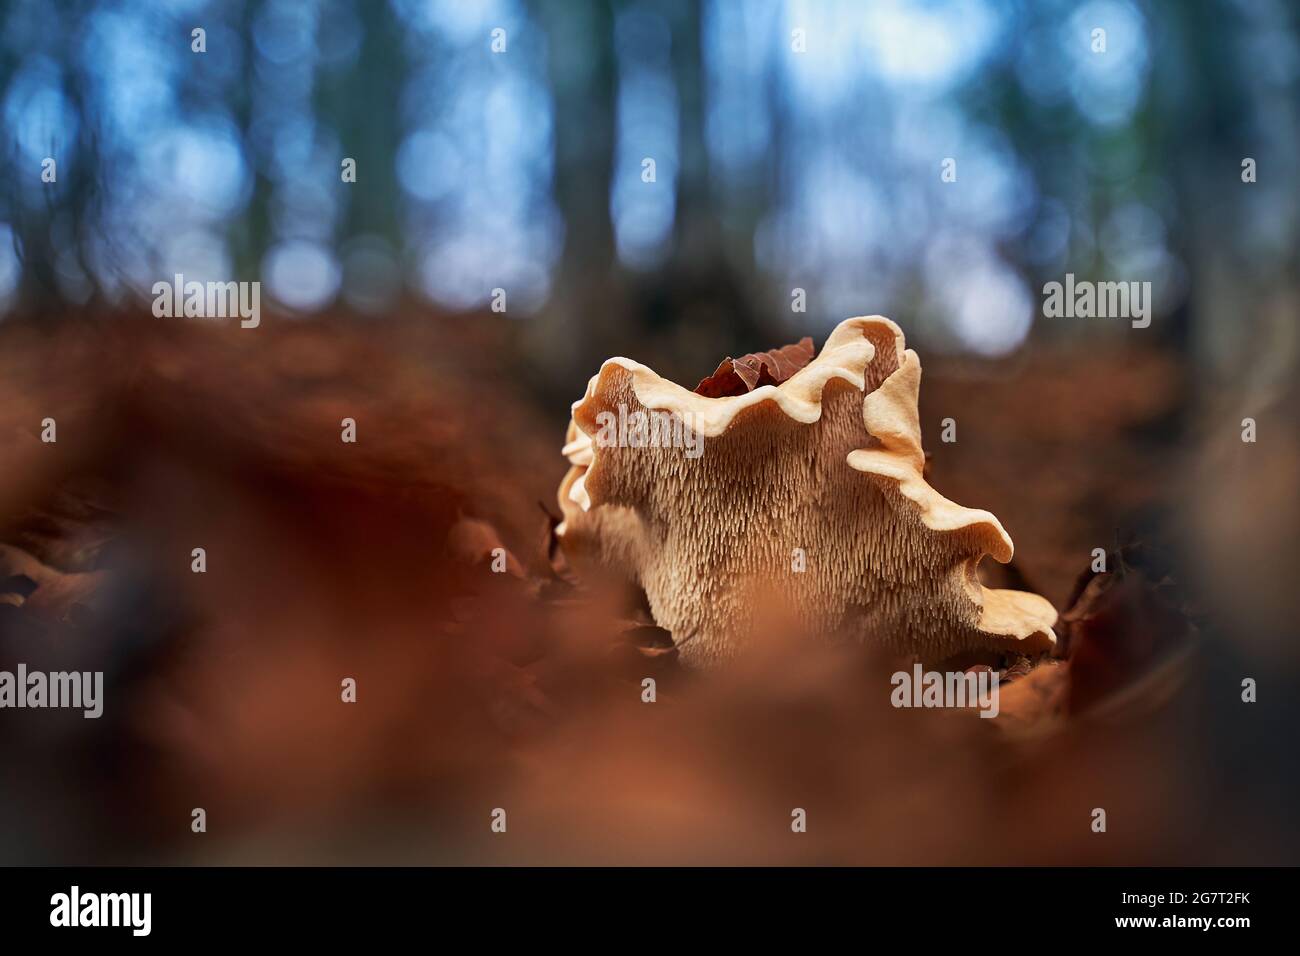 Setas de tapa de leche o lactifluus vellereus en un bosque de otoño Foto de stock